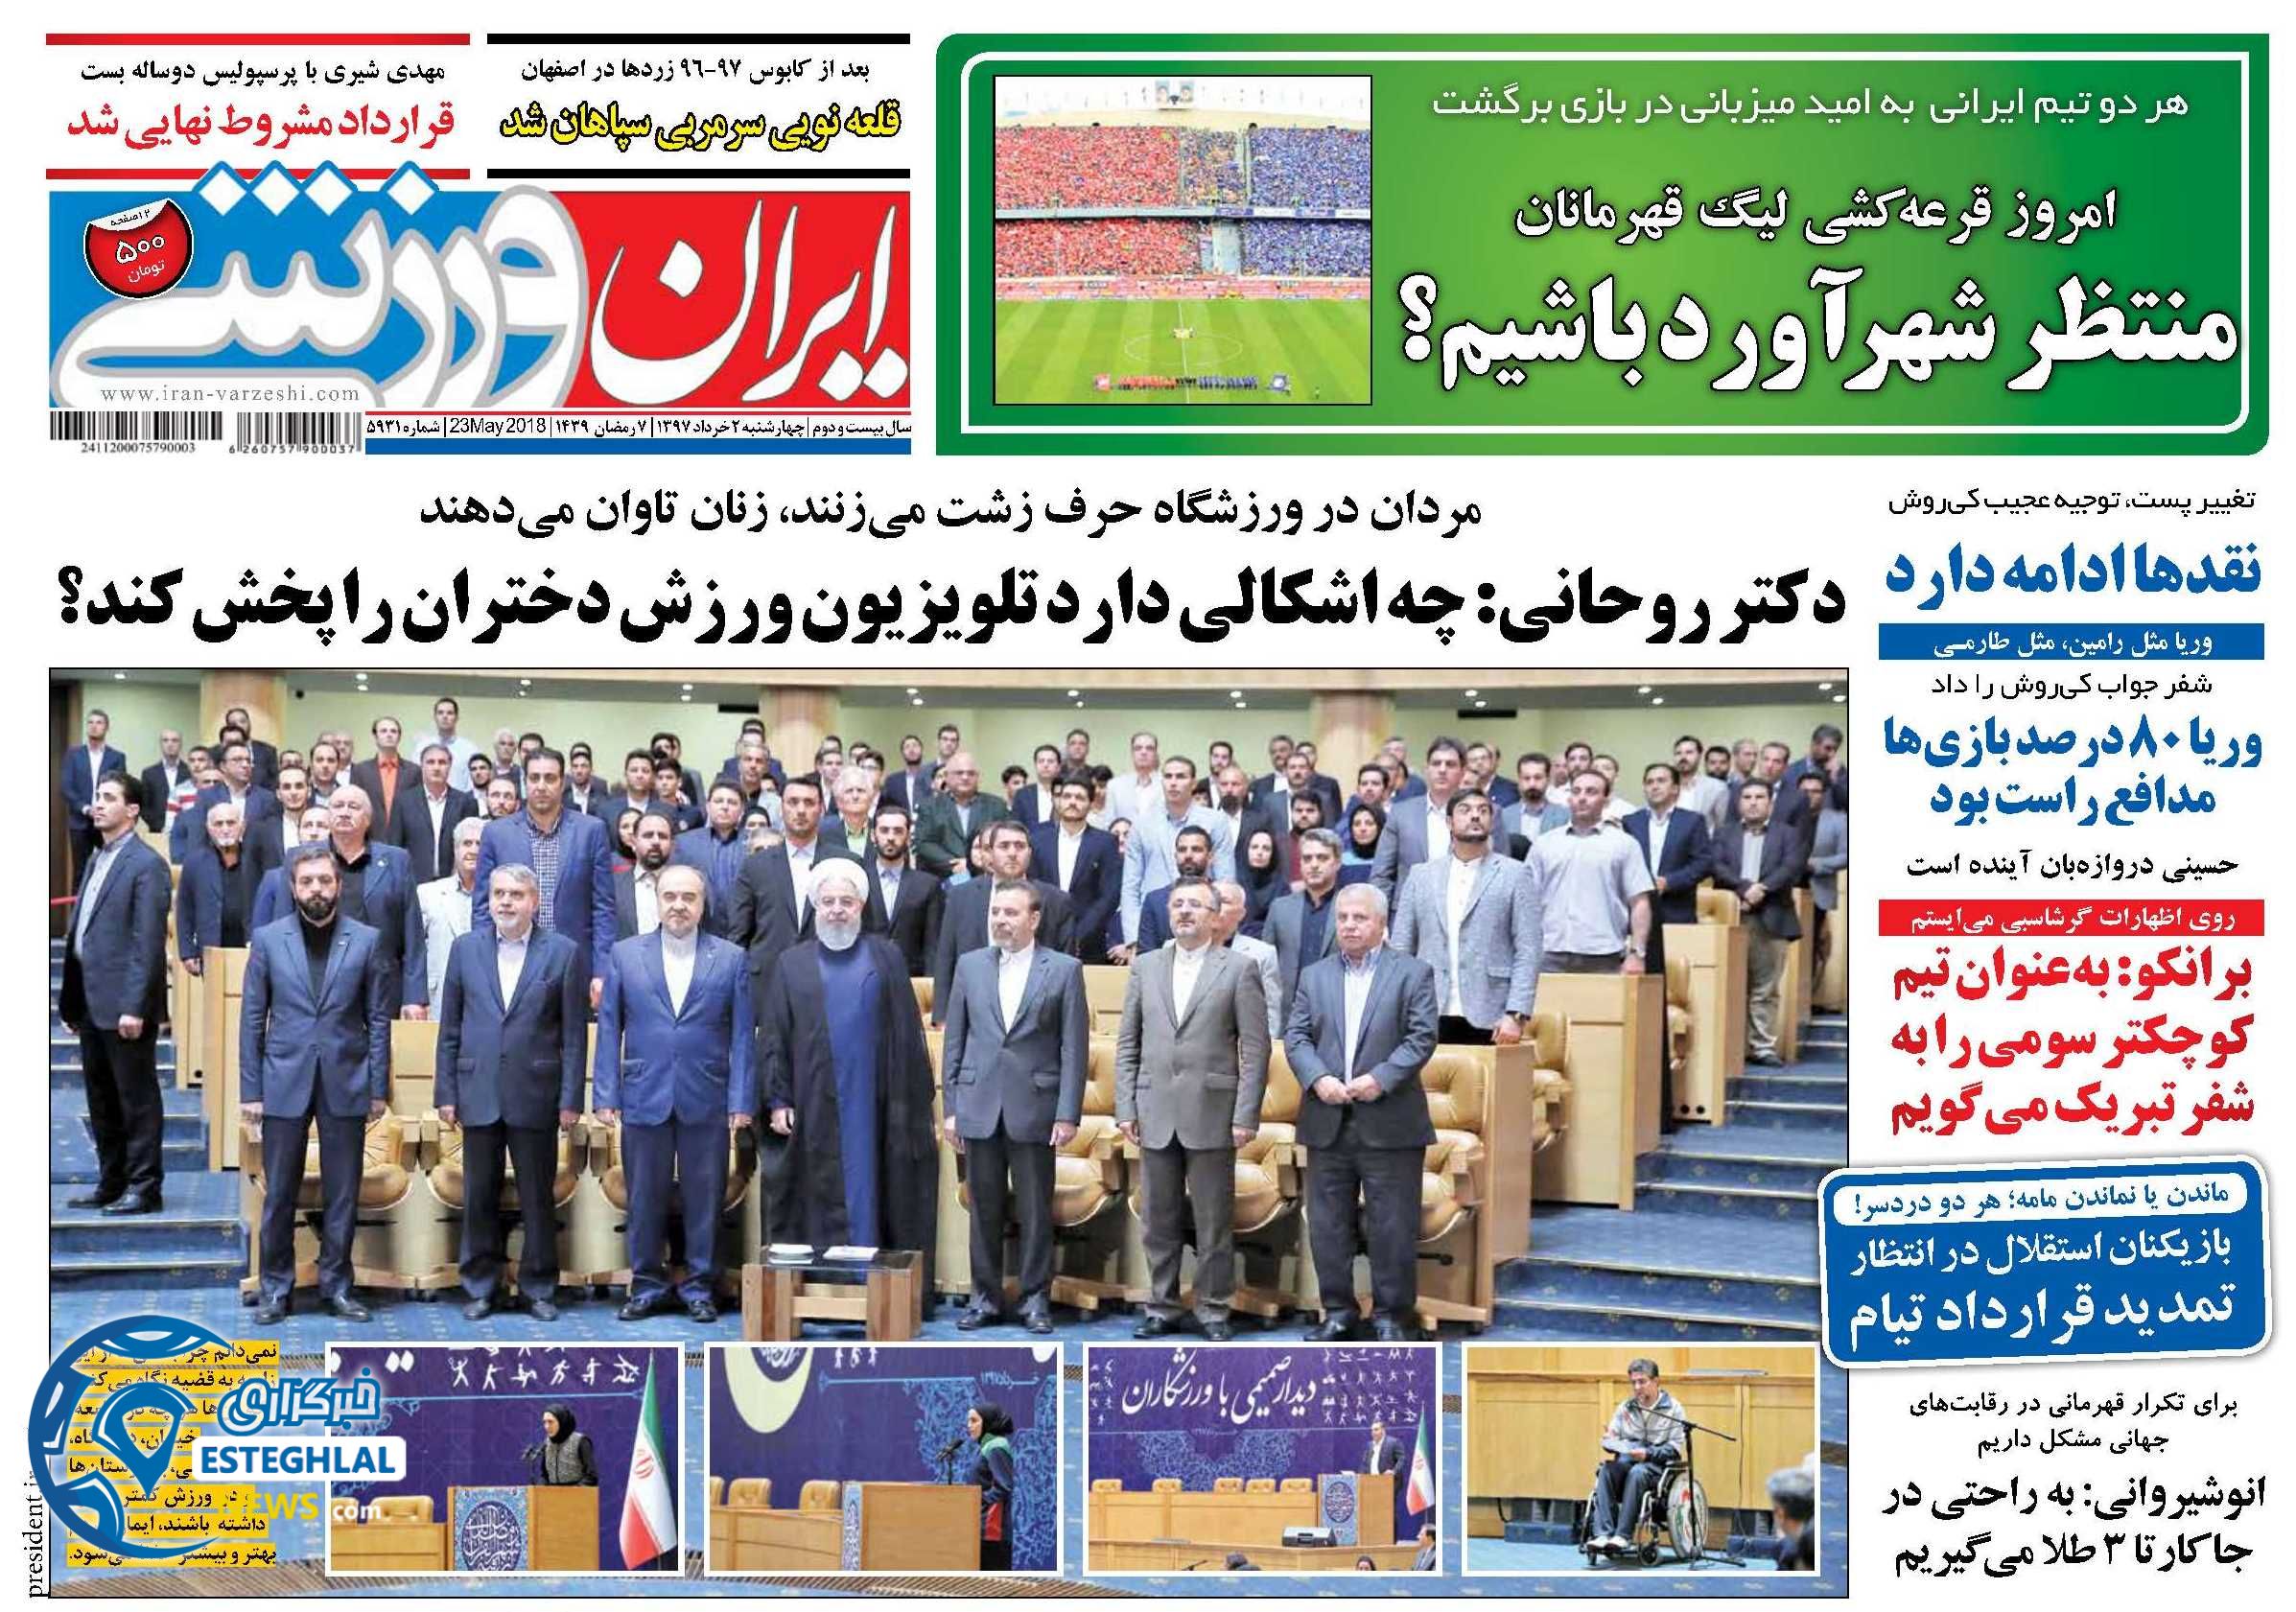   روزنامه ایران ورزشی چهارشنبه 2 خرداد 1397